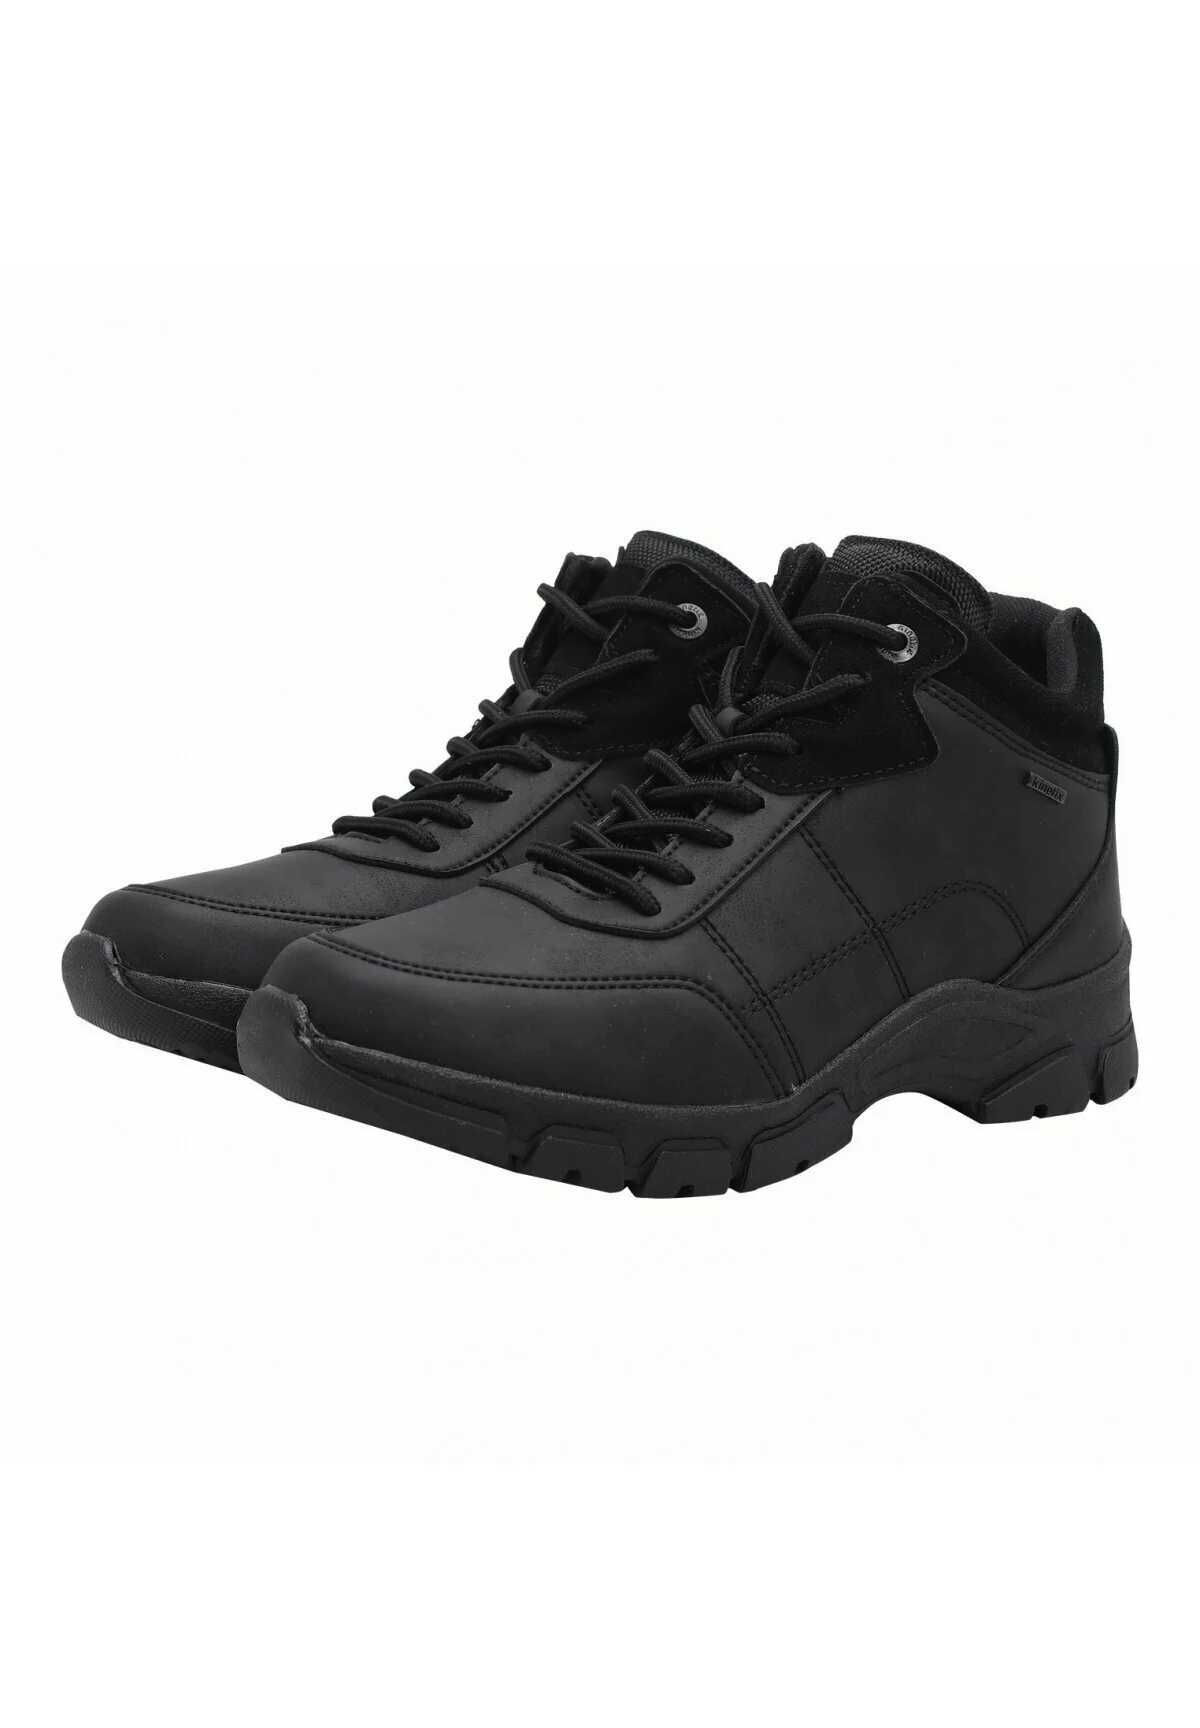 MEGA OKAZJA ! Czarne buty trekkingowe outdoor górskie cena sklep 269zł